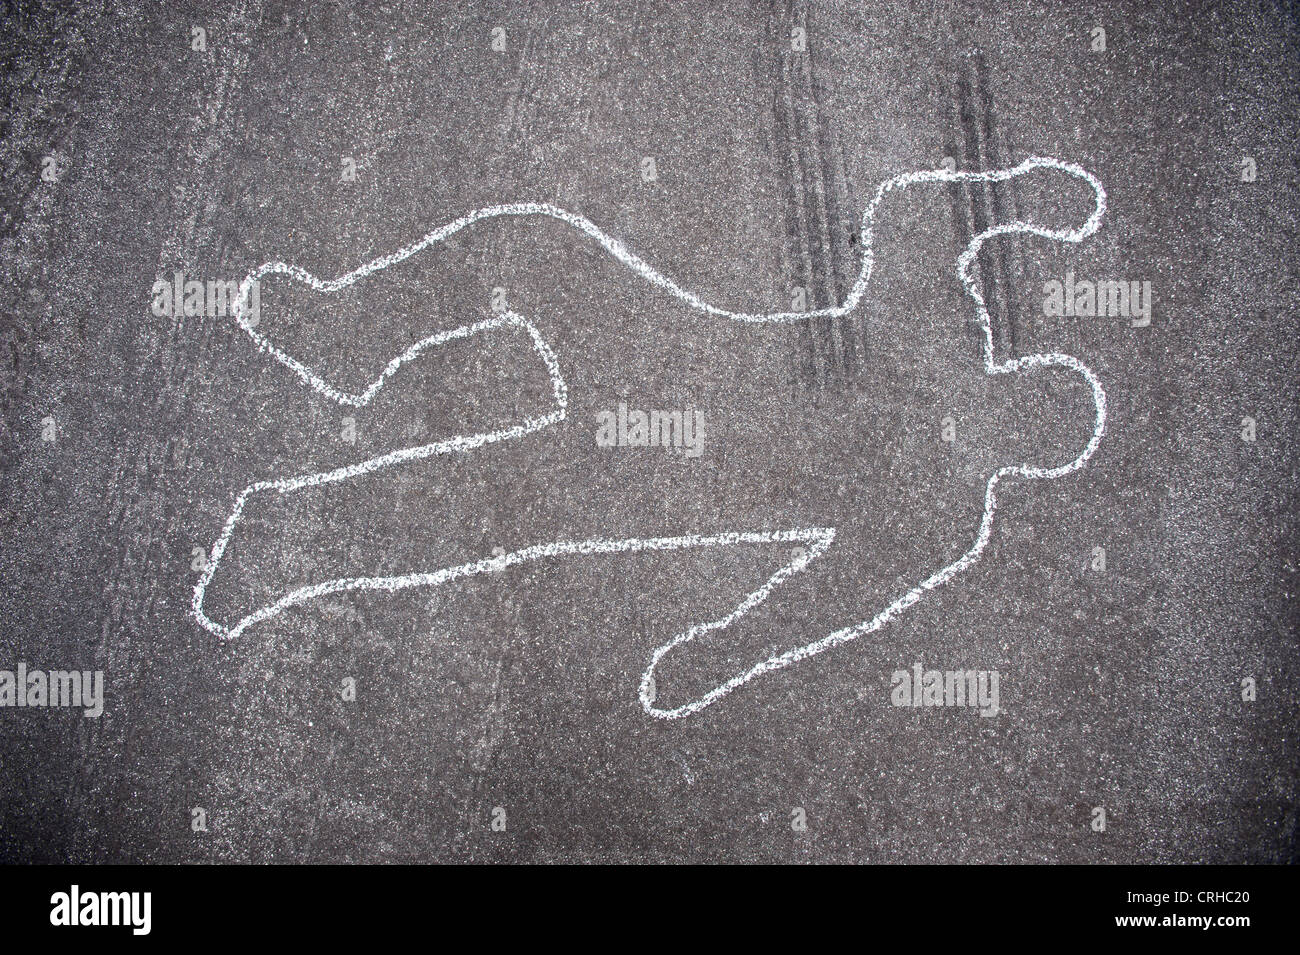 Verbrechen-Szene Schlagschnur von einem Autounfall mit Reifen Bremsspuren führt über den Körper. Stockfoto